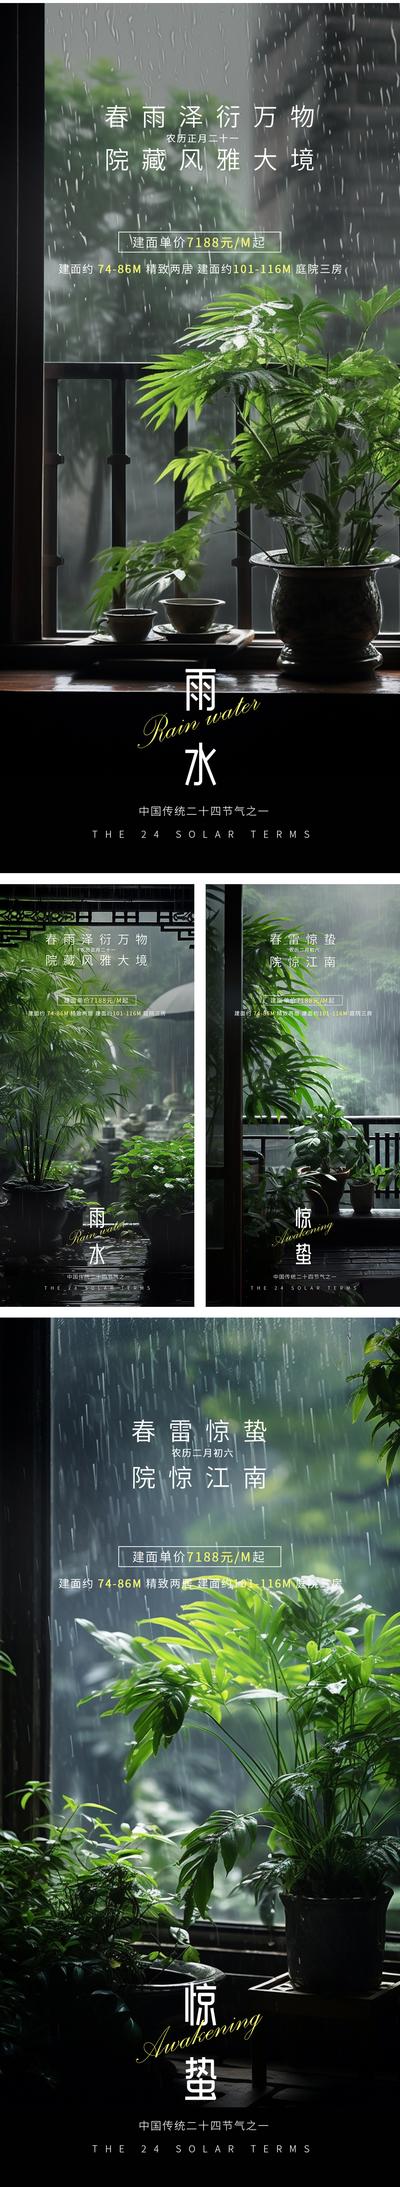 南门网 广告 海报 节气 惊蛰 高端 二十四节气 雨水 谷雨 春天 房地产 庭院 景观 高级 新中式 下雨 绿植